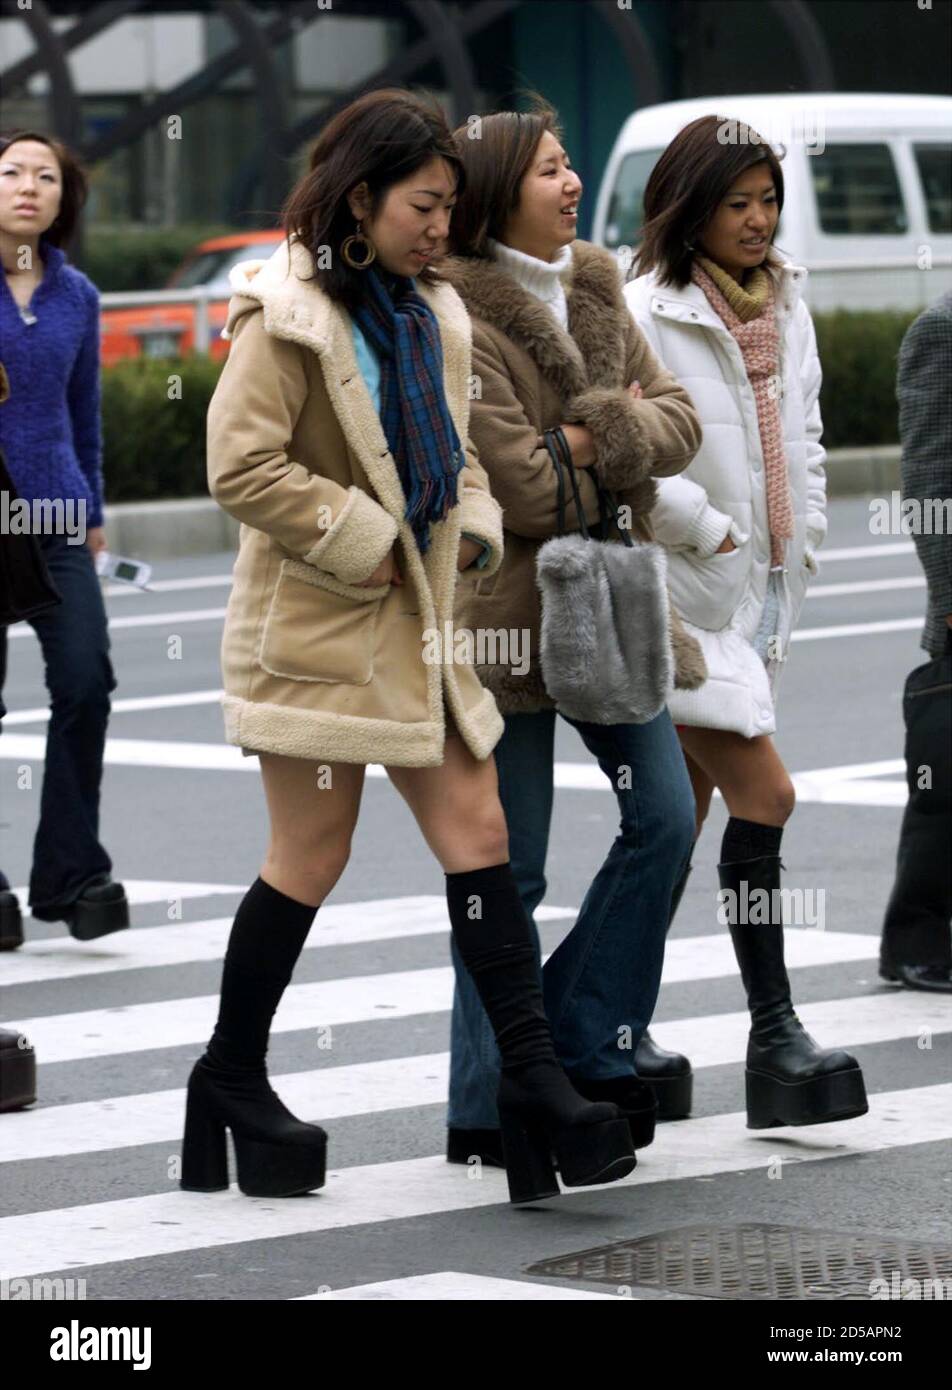 Les filles japonaises font une déclaration de mode avec leurs bottes de  plate-forme alors qu'elles se promènent dans le quartier Shibuya du centre  de la jeunesse de Tokyo février 6. La police